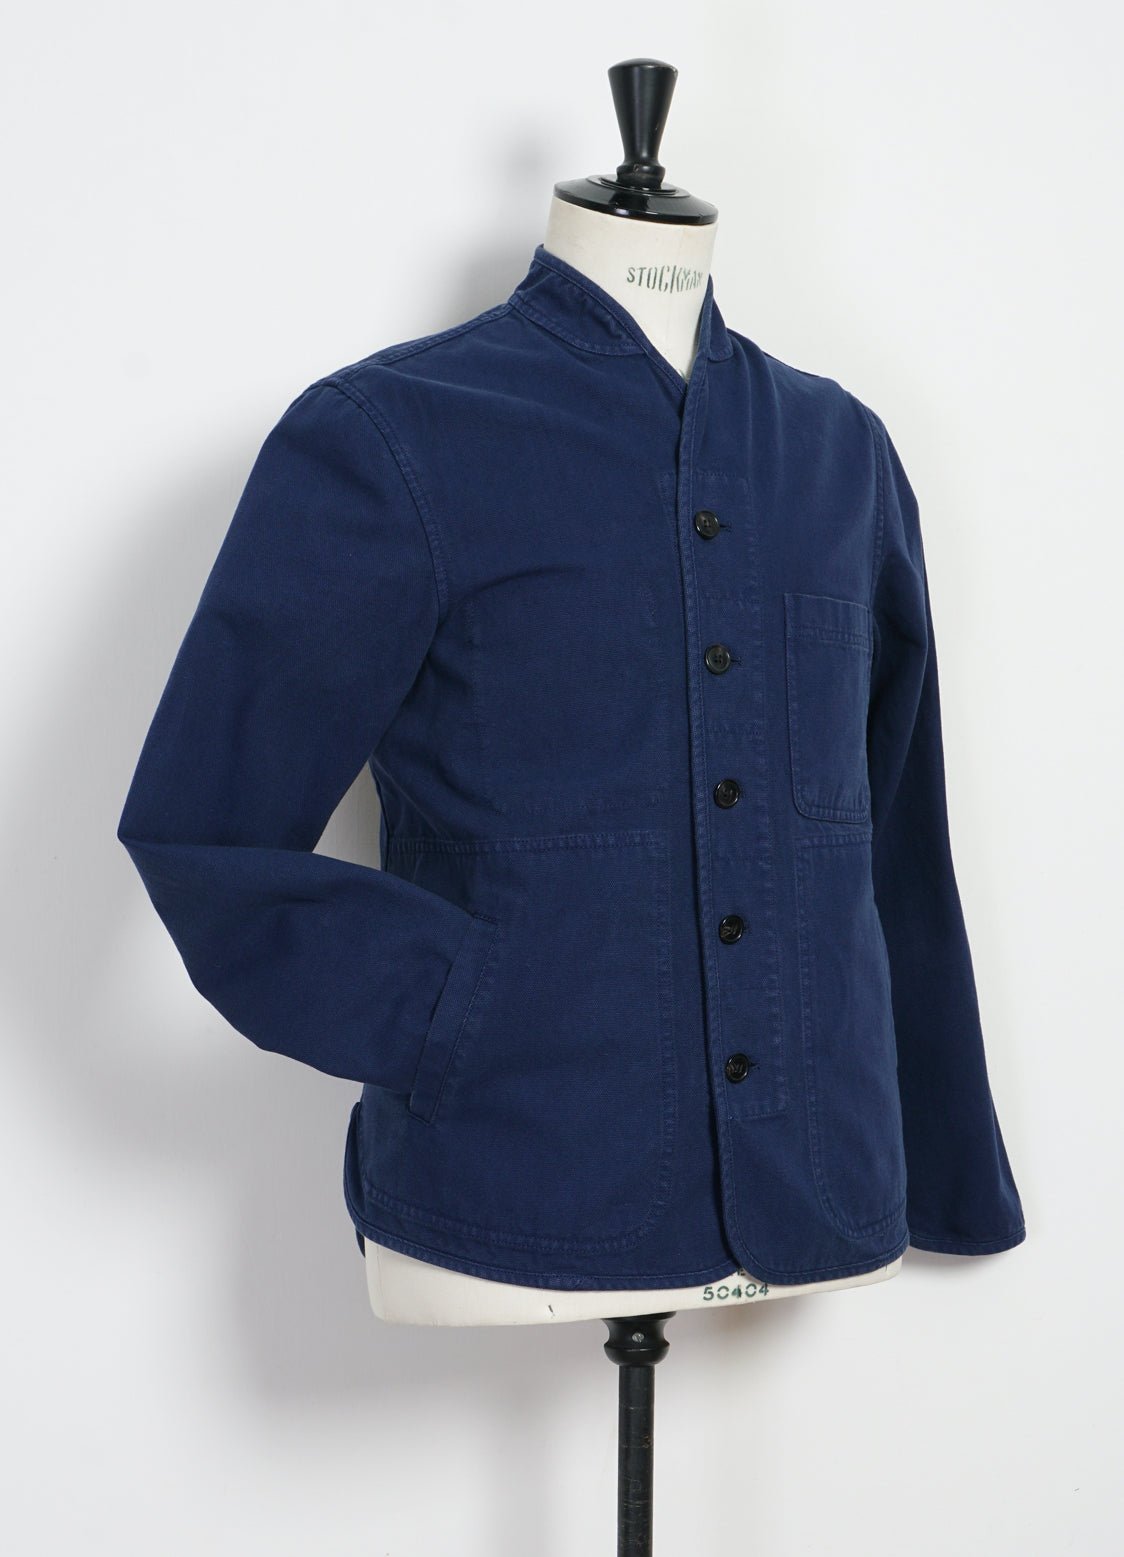 HANSEN GARMENTS - ERLING | Refined Work Jacket | Work Blue - HANSEN Garments